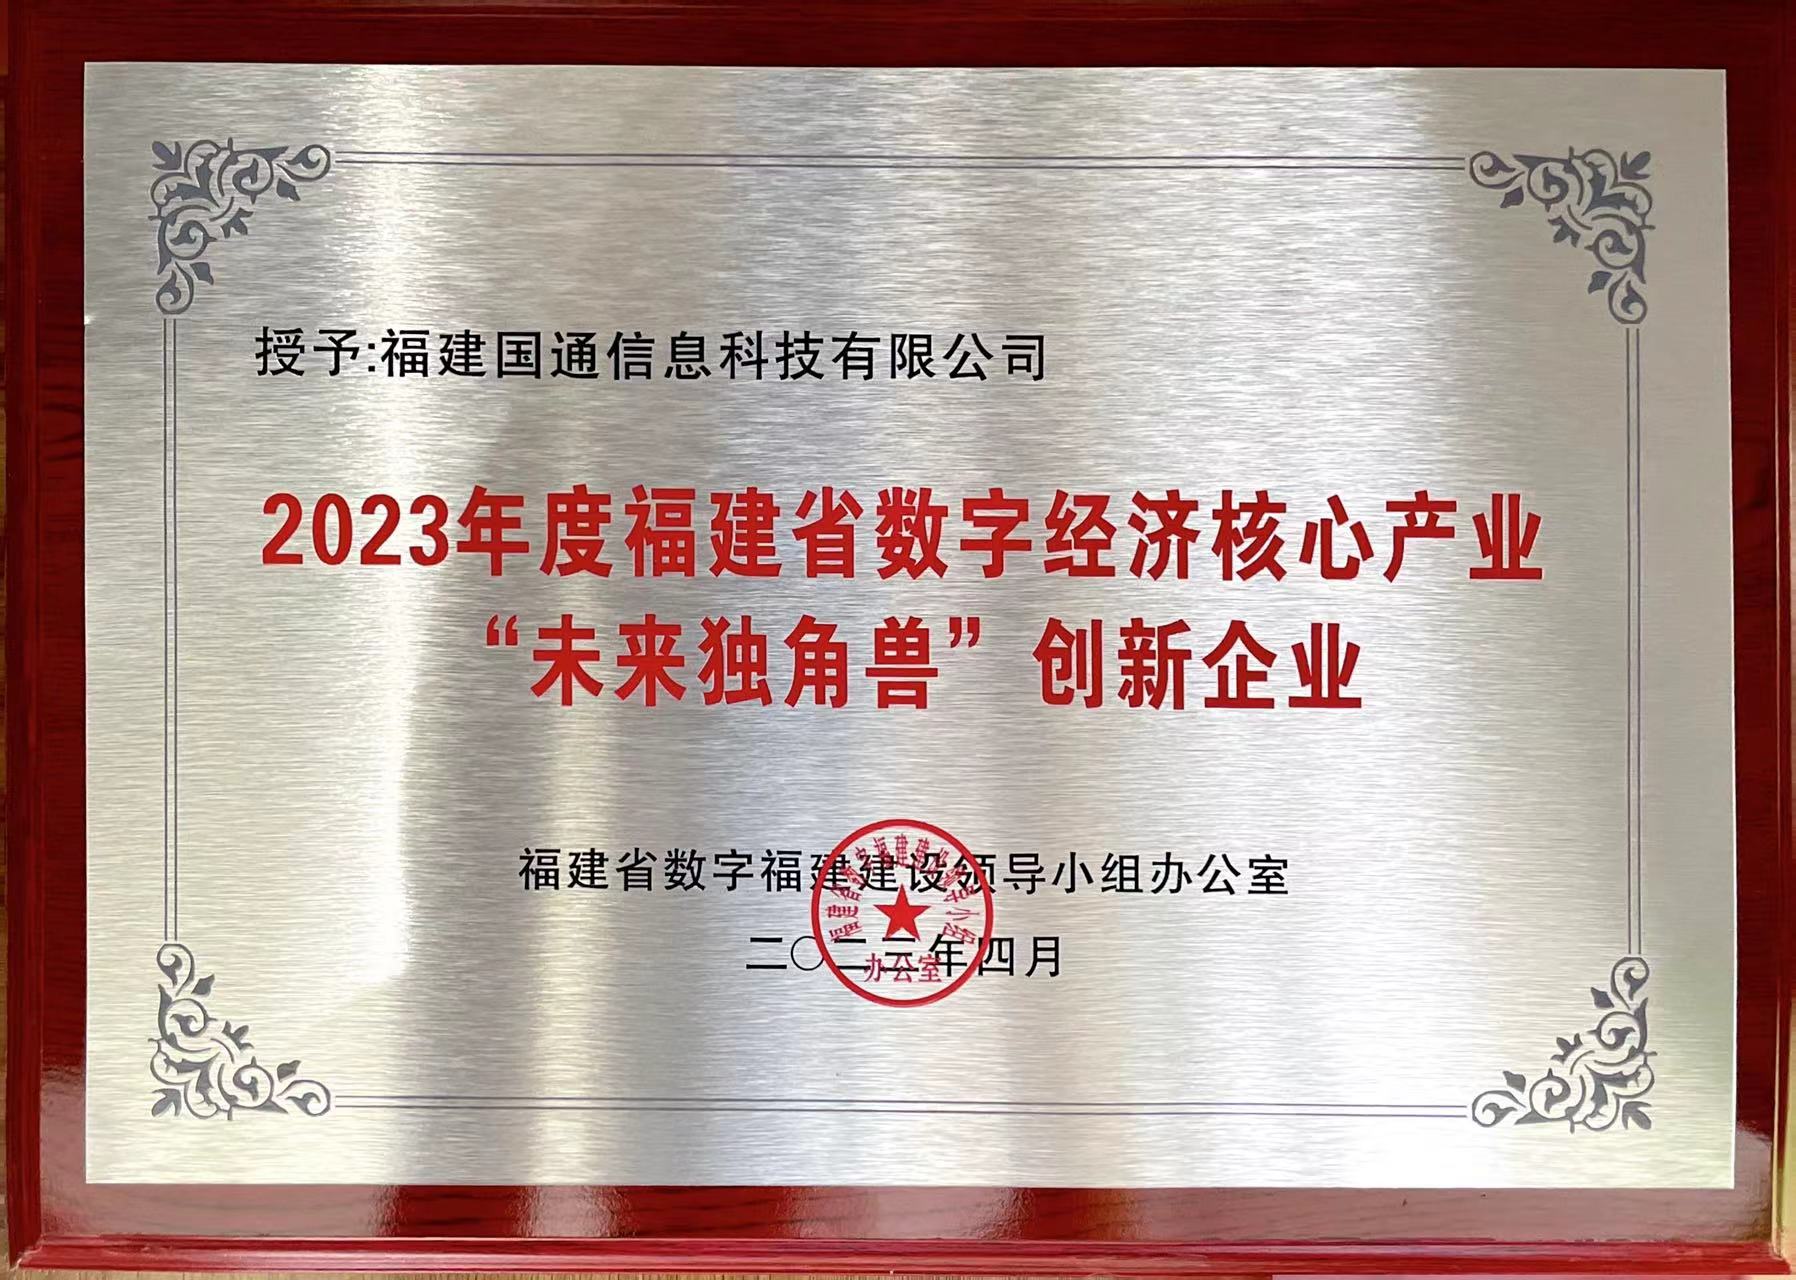 2023年度福建省數字經(jīng)濟核心産業“未來獨角獸”創新企業